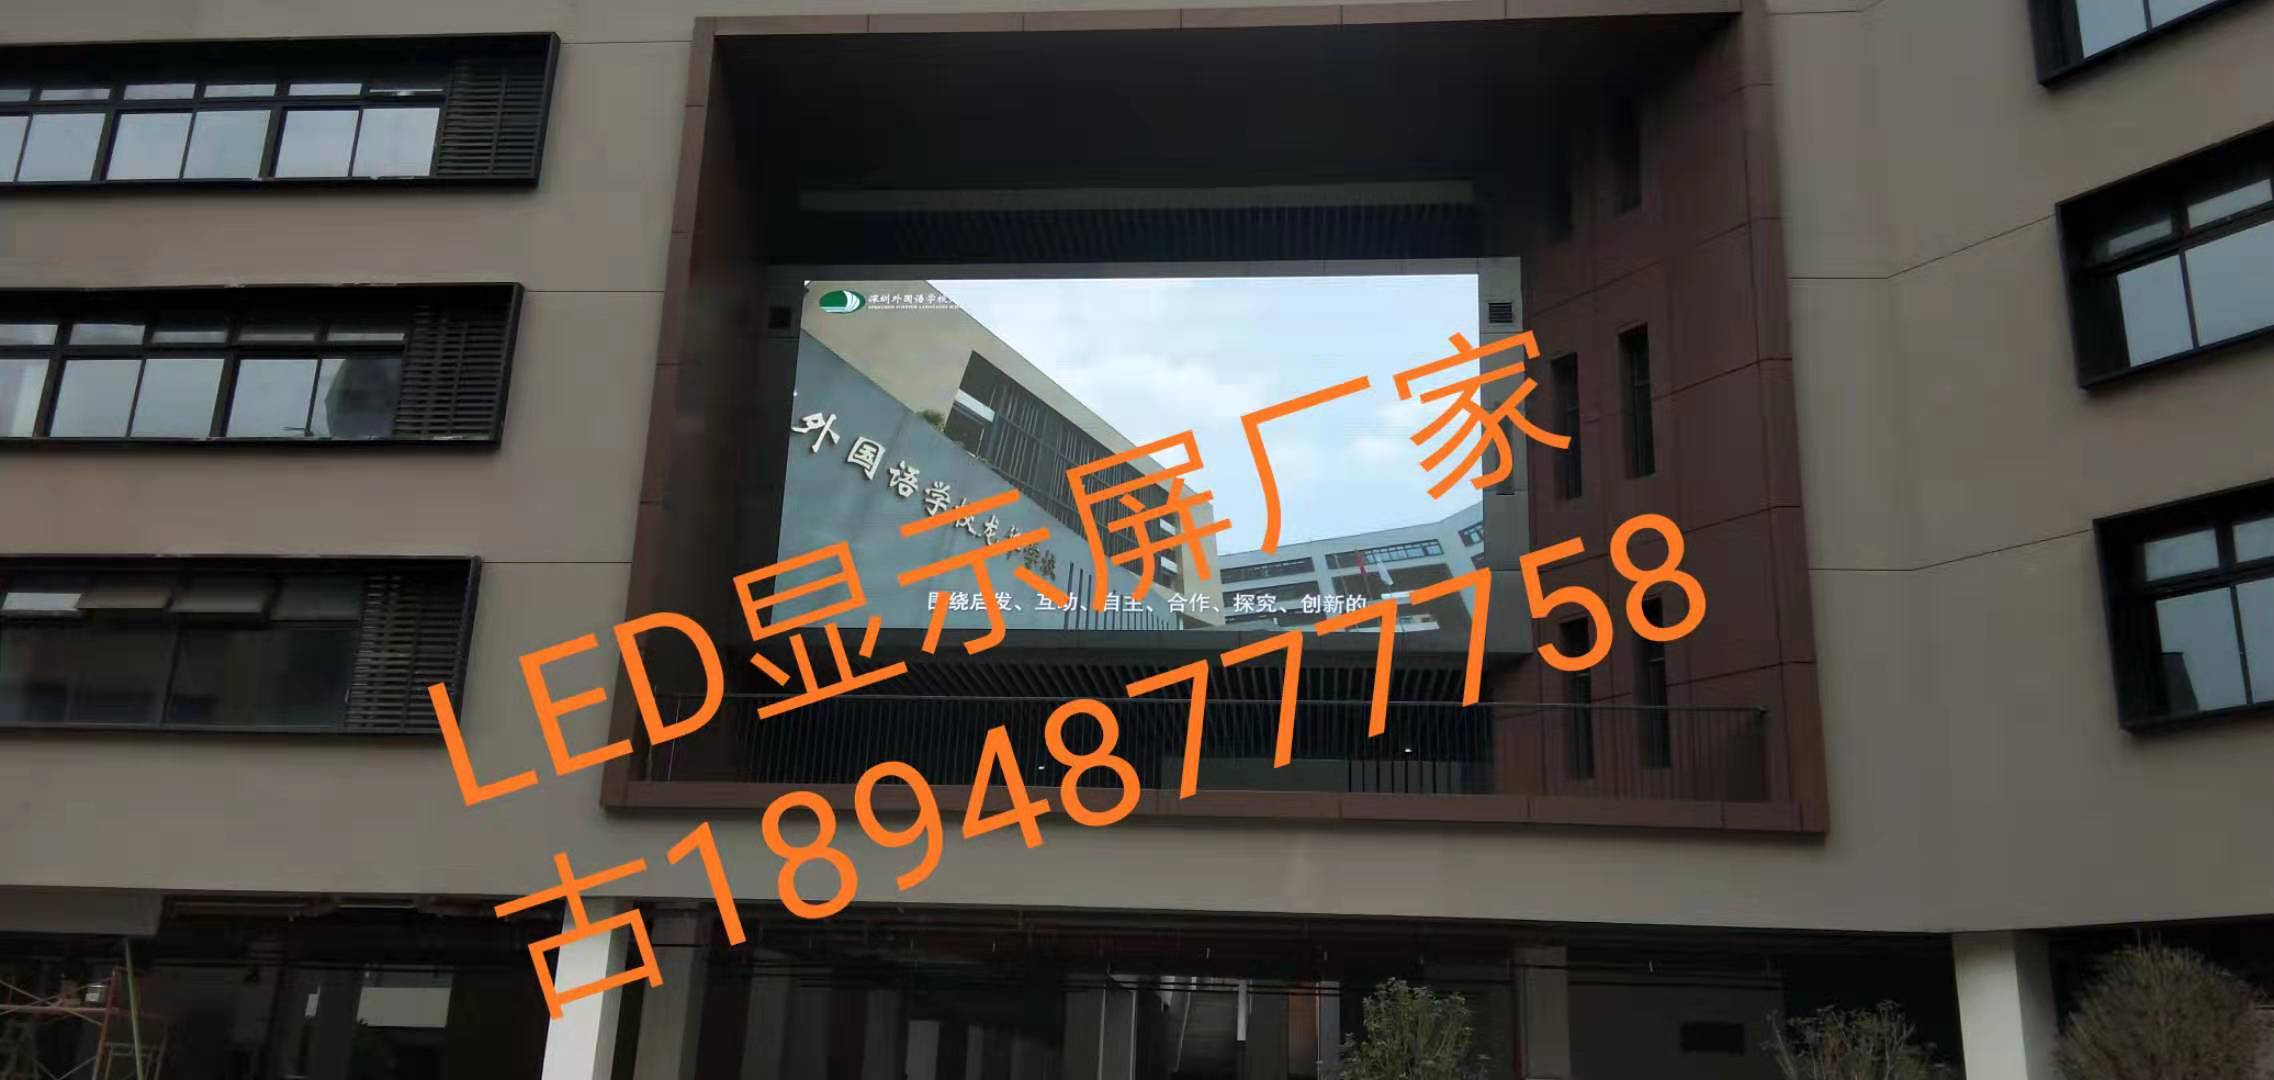 LED显示屏节能改造工程的厂家五华县有吗